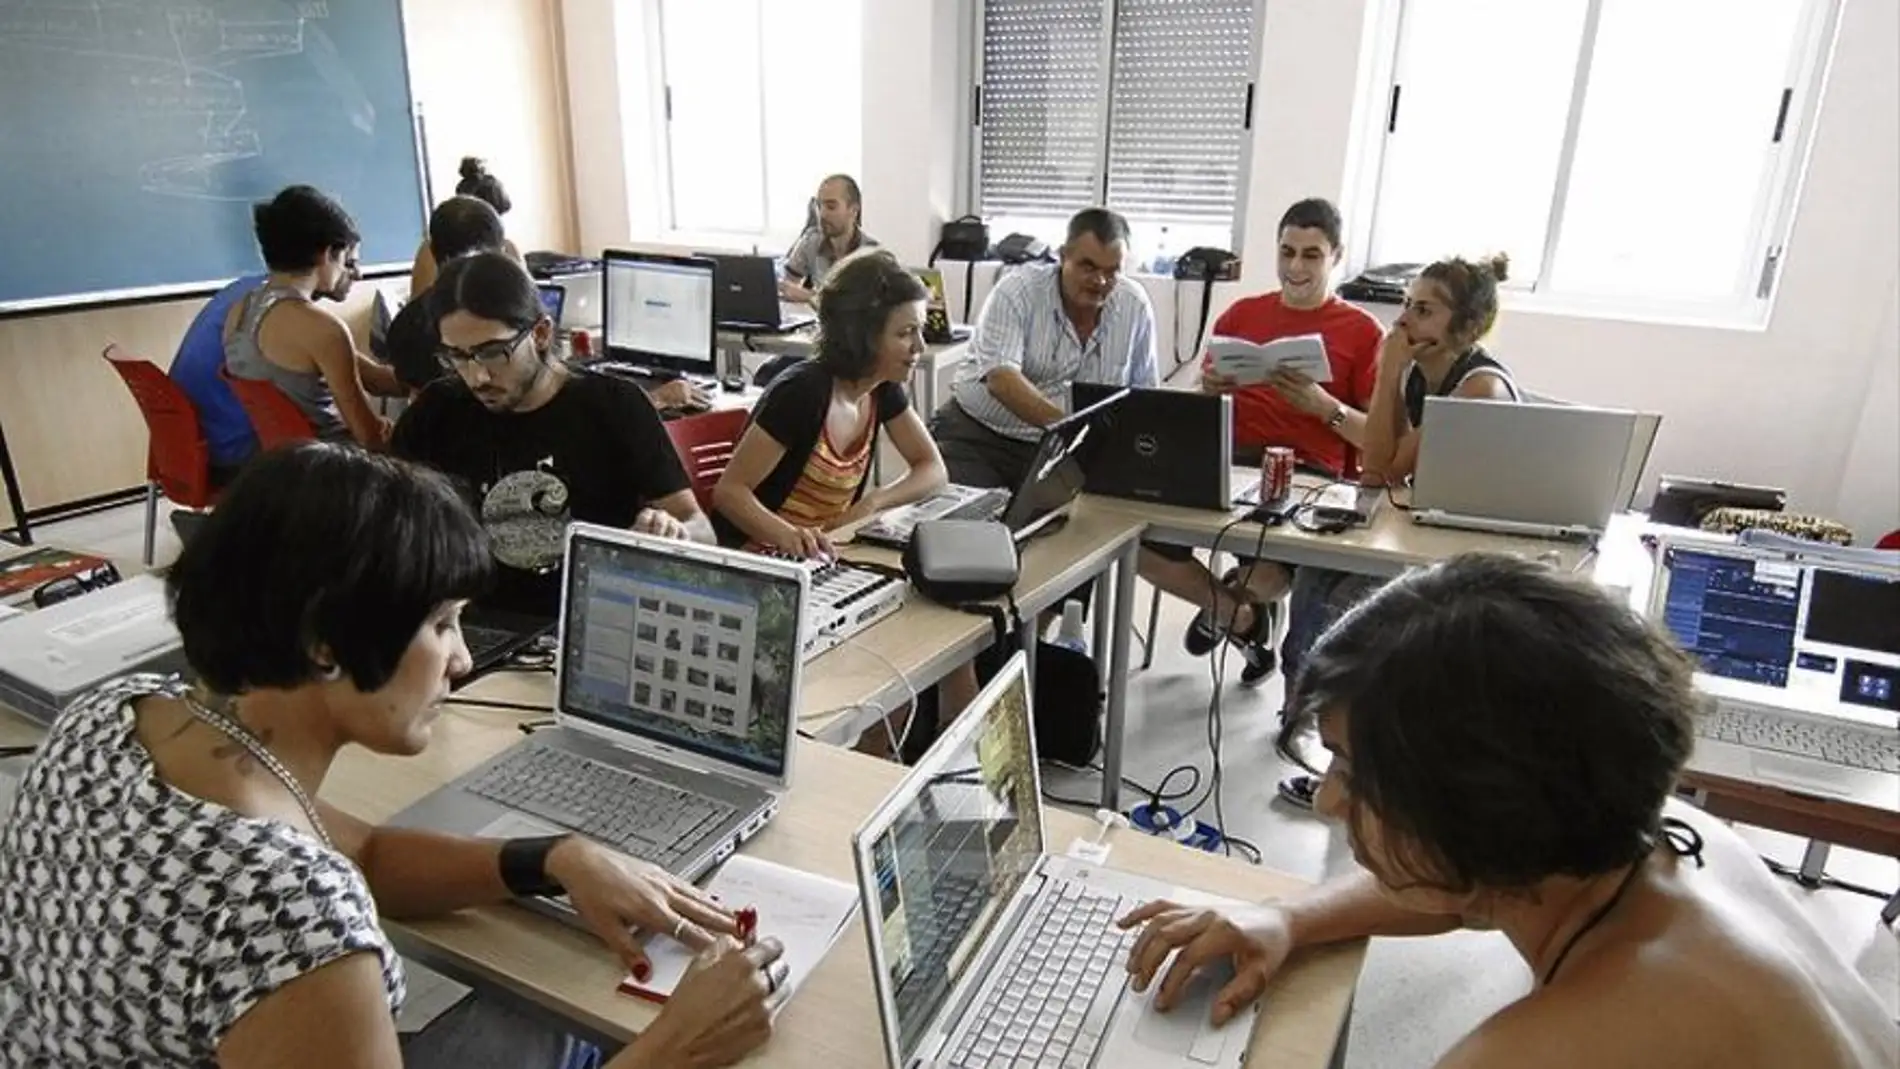 La Universidad Popular de Cáceres aprueba el presupuesto para este año que asciende a 1,28 millones de euros